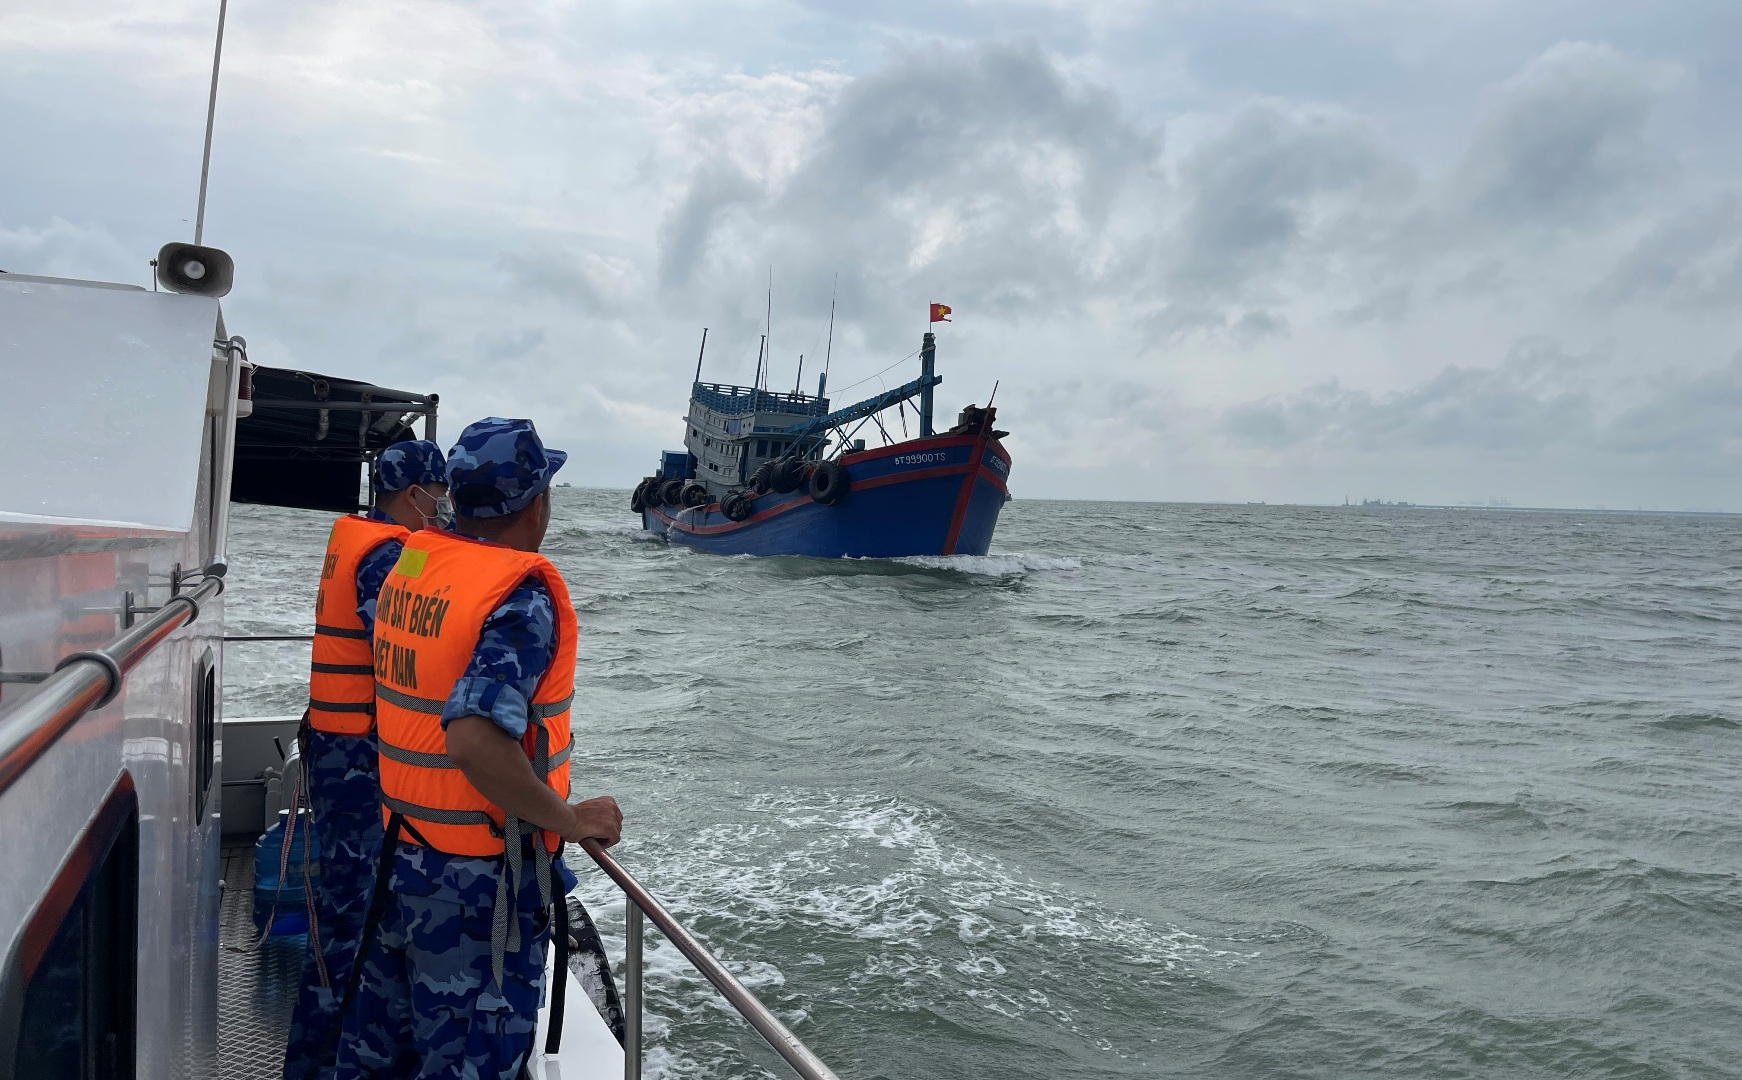 Tàu chở dầu trái phép bị Cảnh sát biển phát hiện tại vùng biển của tỉnh Bà Rịa - Vũng Tàu. Ảnh: Đức Định.